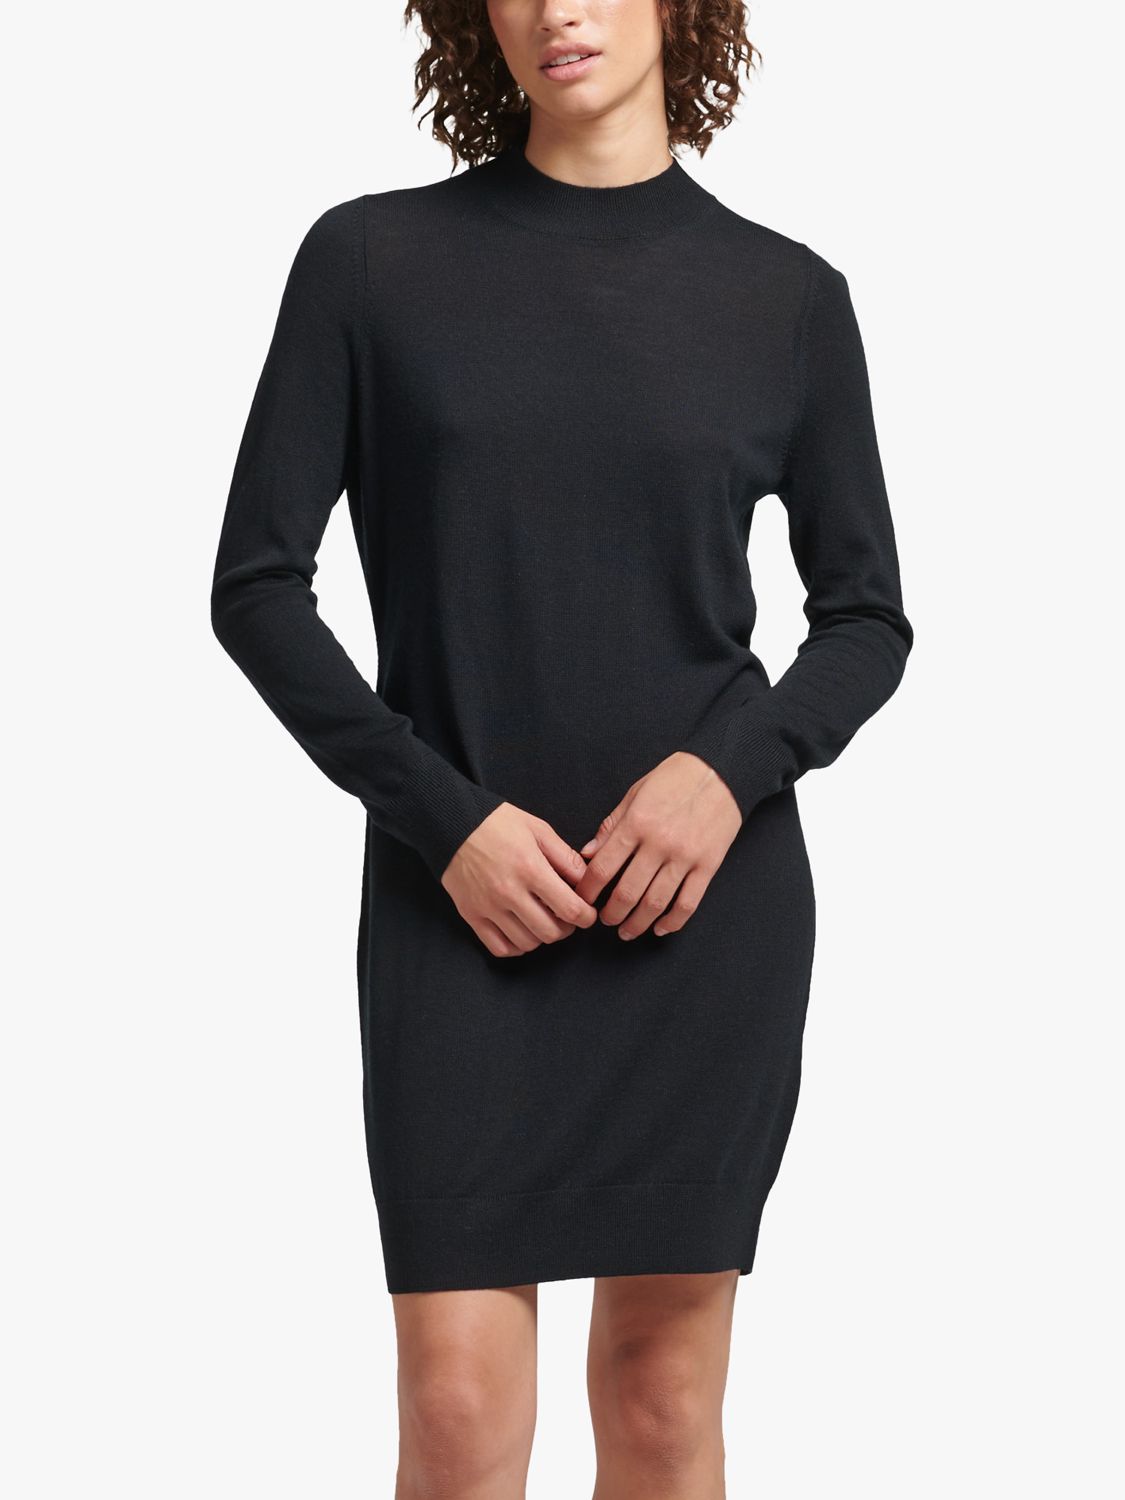 Buy Superdry Merino Wool Long Sleeve Mini Dress Online at johnlewis.com